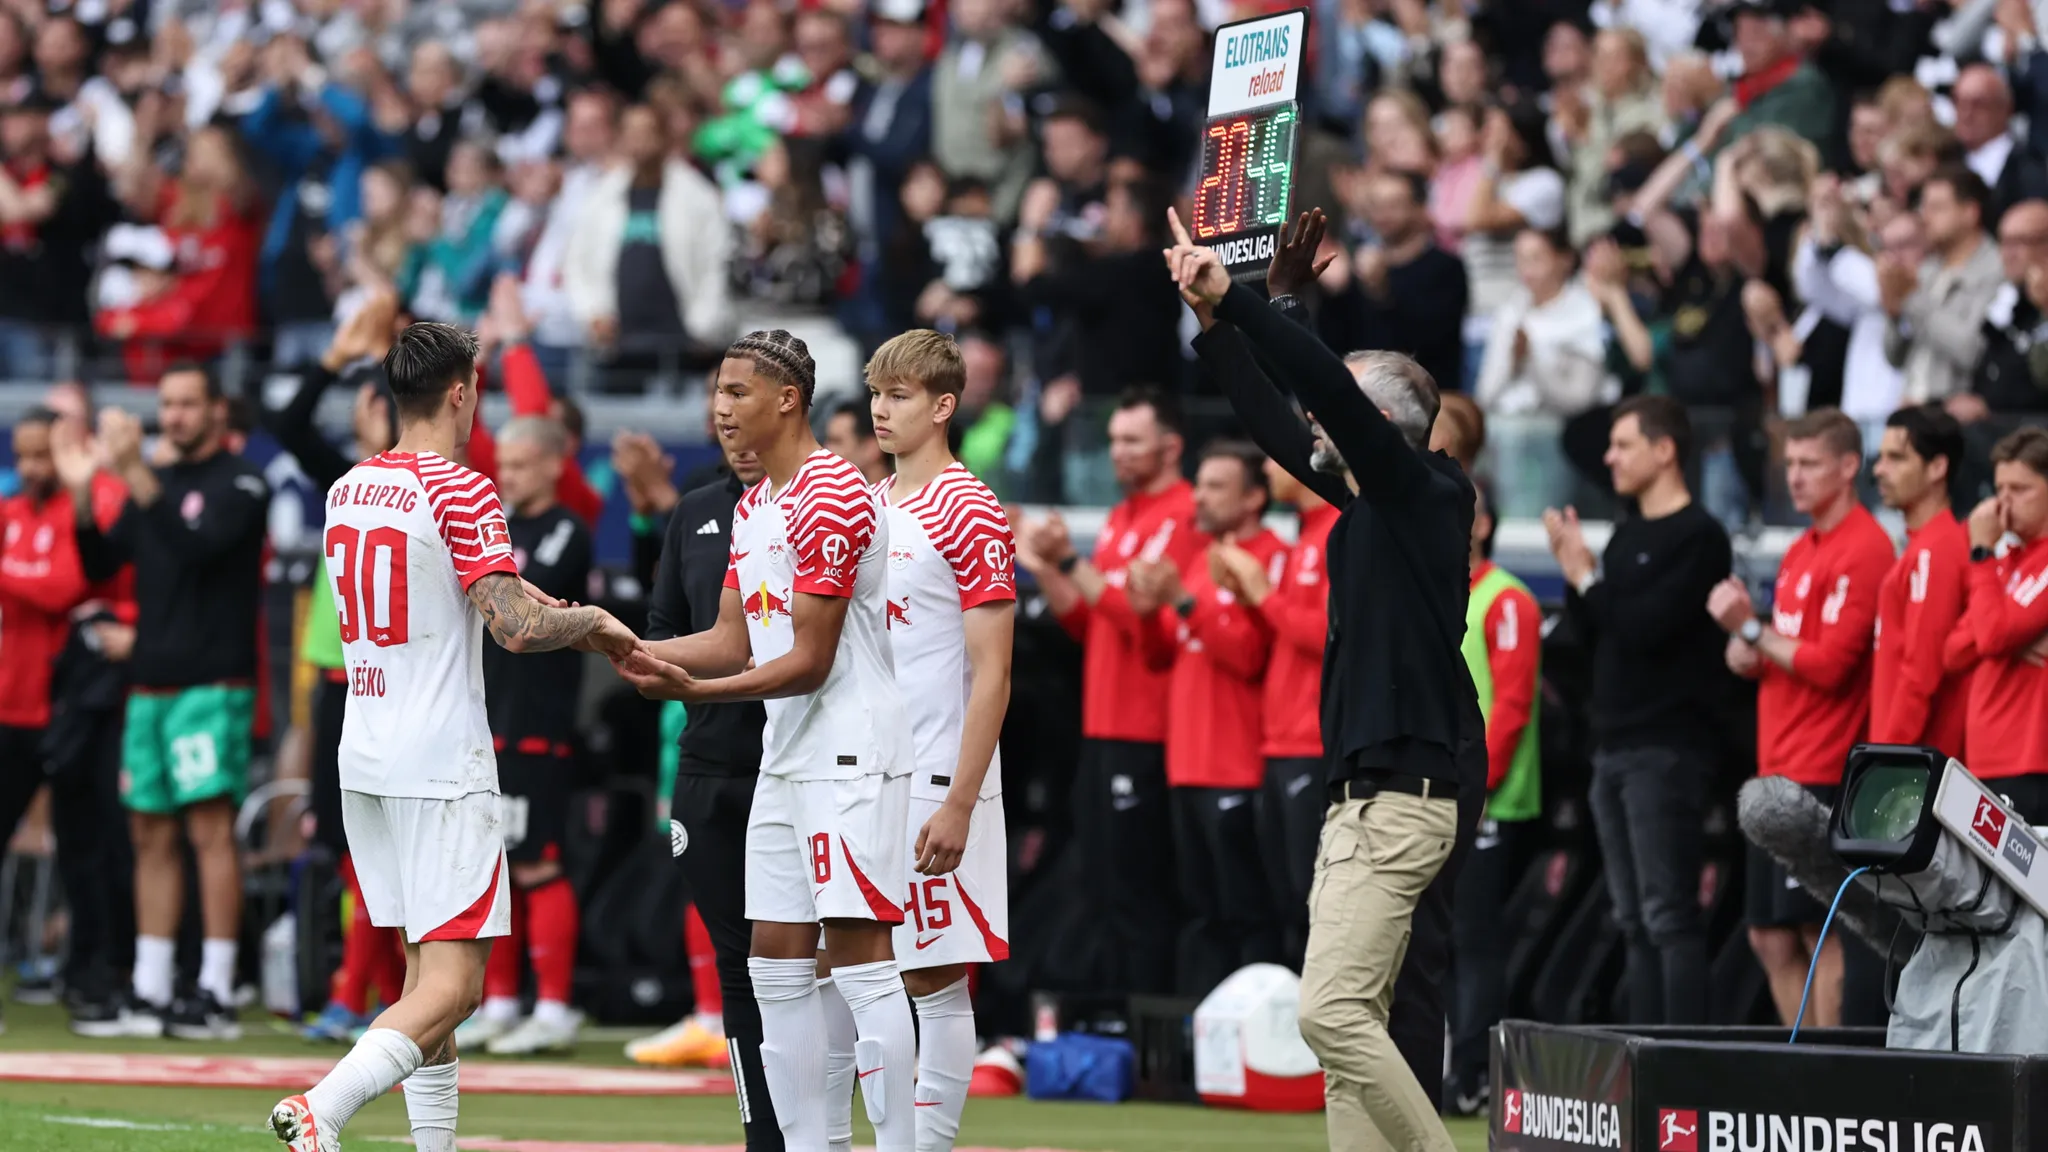 Nuha Jatta und Jonathan Norbye wurden in der Nachspielzeit eingewechselt und feierten so ihr Bundesligadebüt.